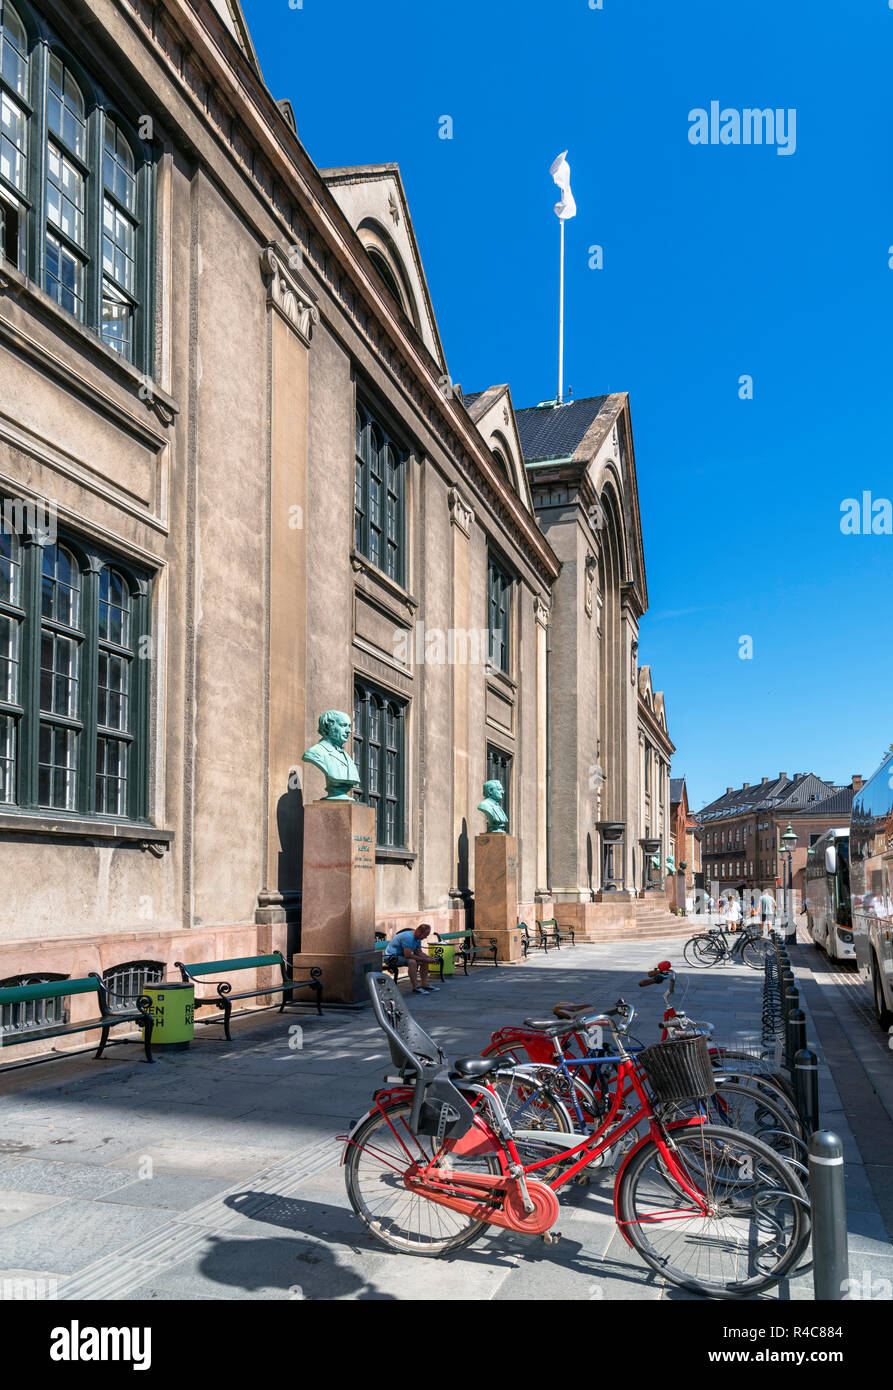 Copenhagen University (Københavns Universitet), Frue Plads, Latin Quarter, Copenhagen, Denmark Stock Photo